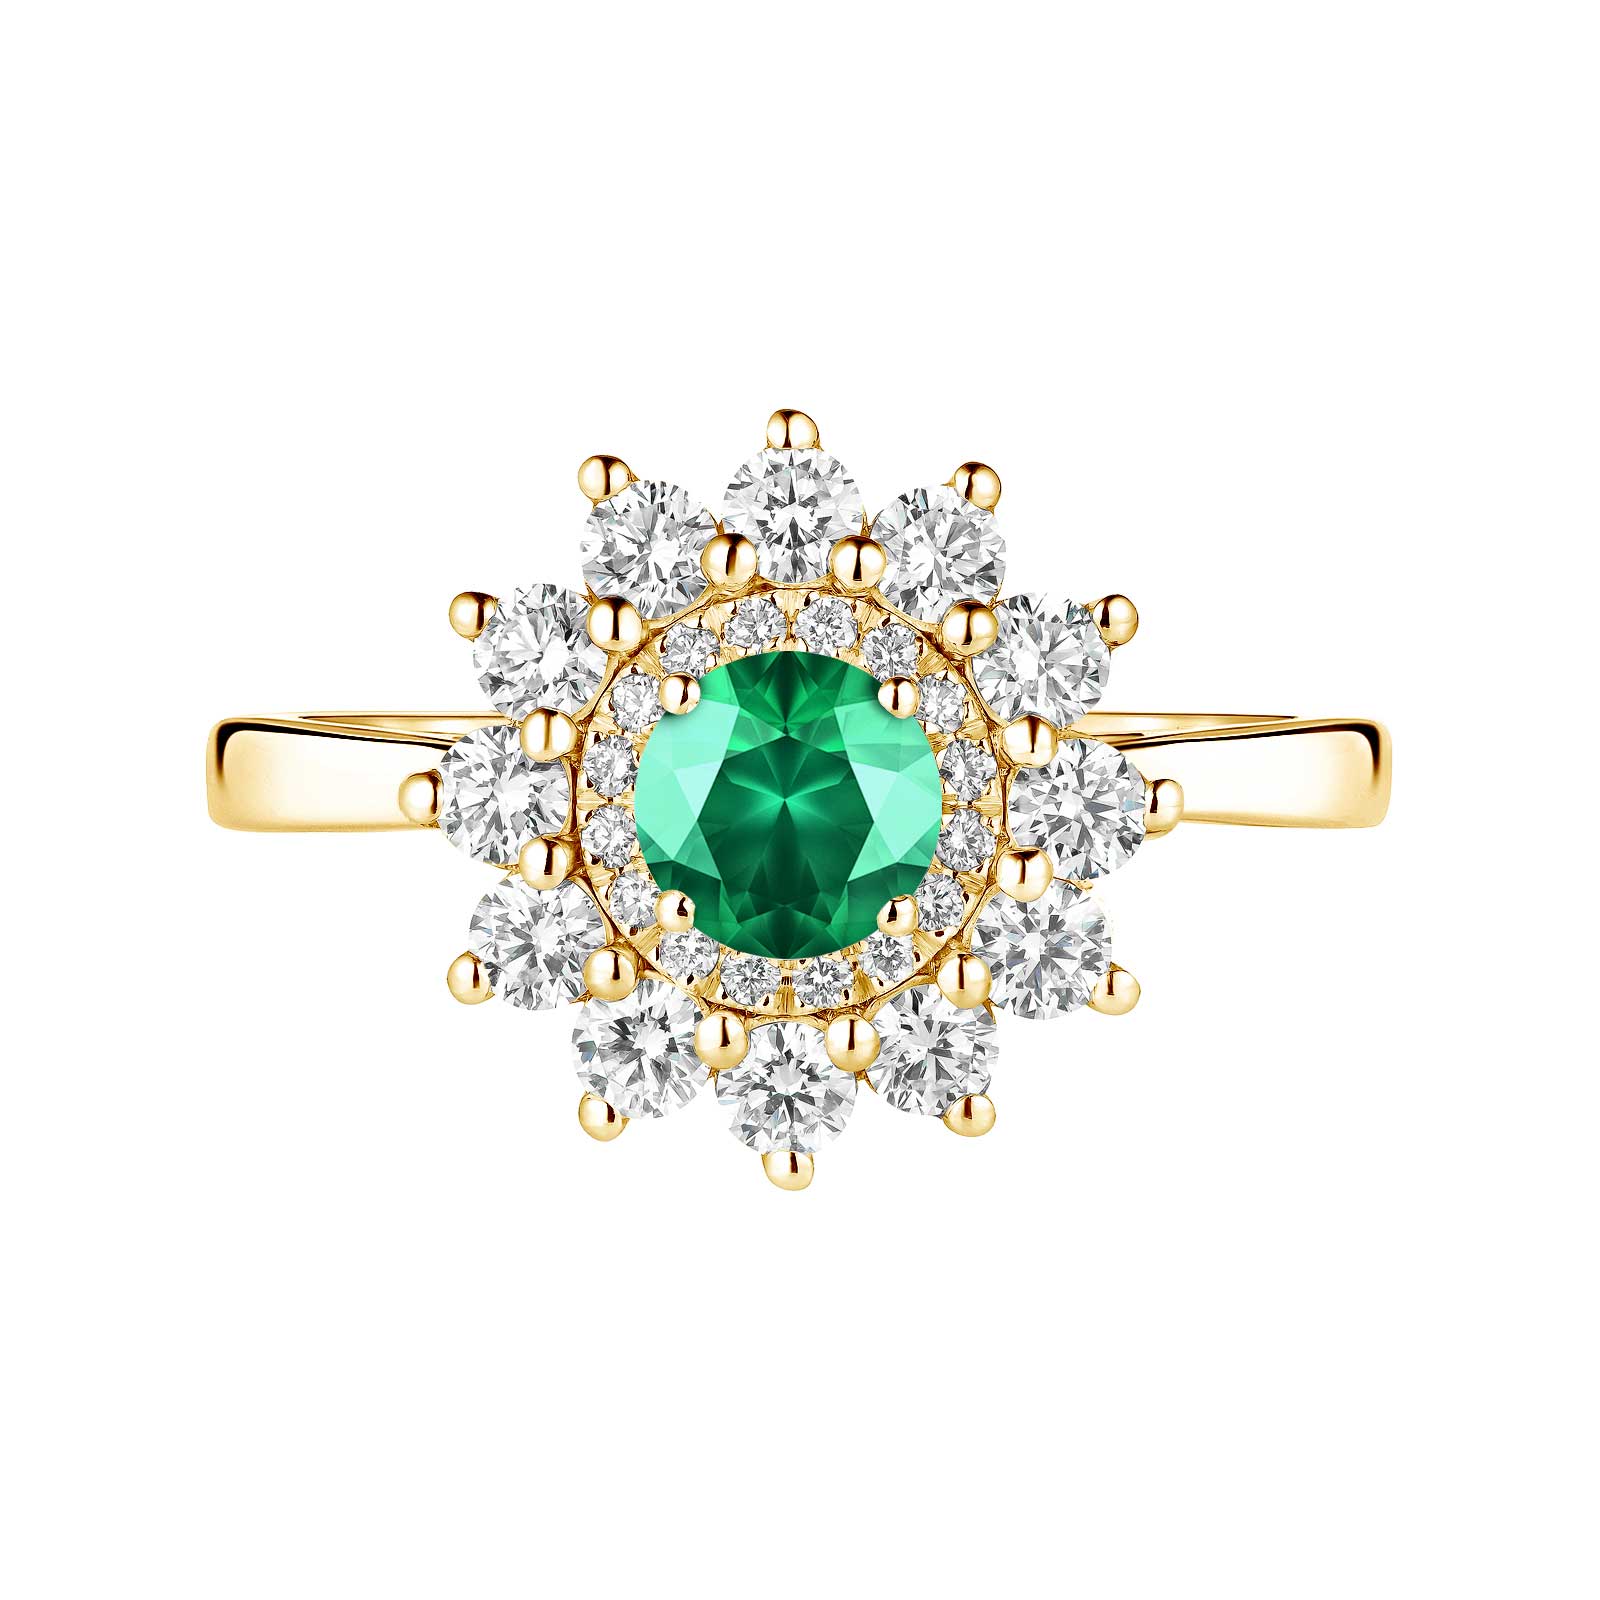 Ring Gelbgold Smaragdgrün und diamanten Lefkos 5 mm 1